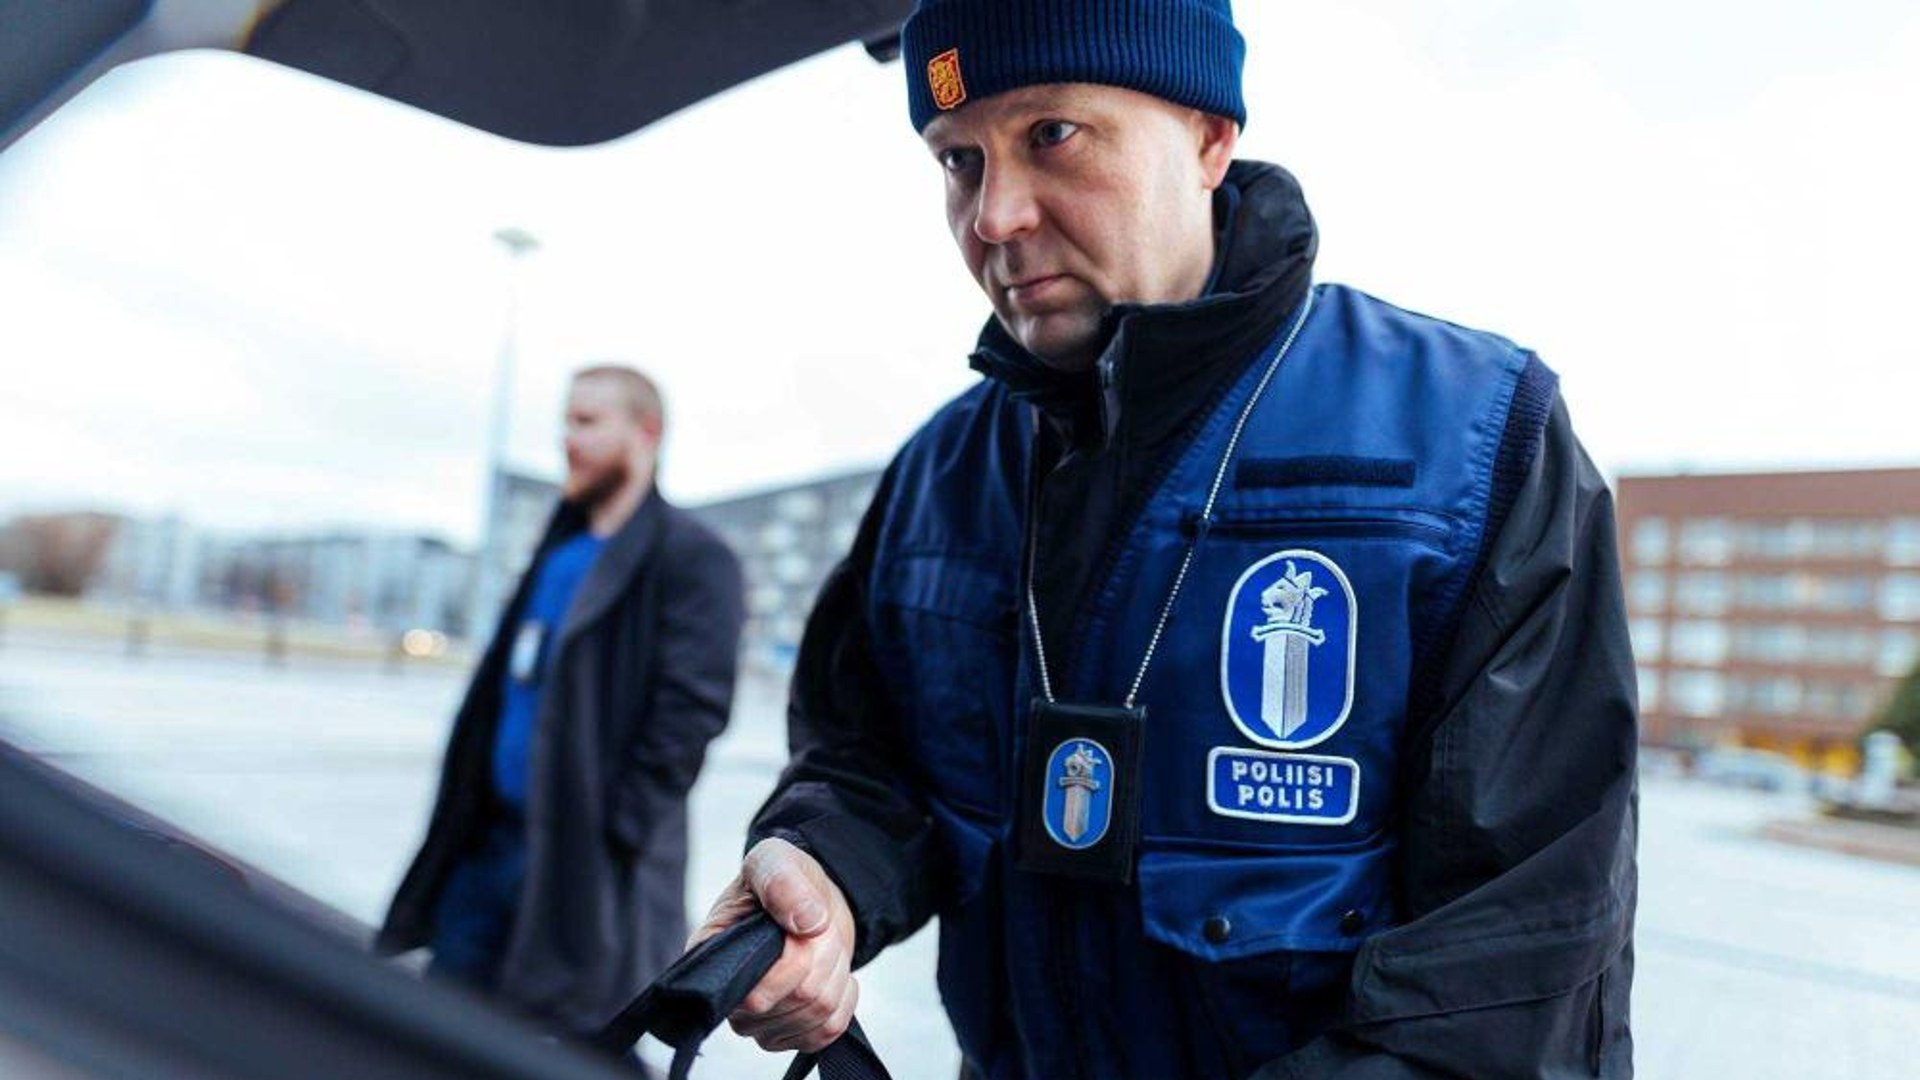 Senaatti-kiinteistöt rakennuttaa uuden viranomaiskiinteistön Ivaloon poliisille ja rajavartiostolle